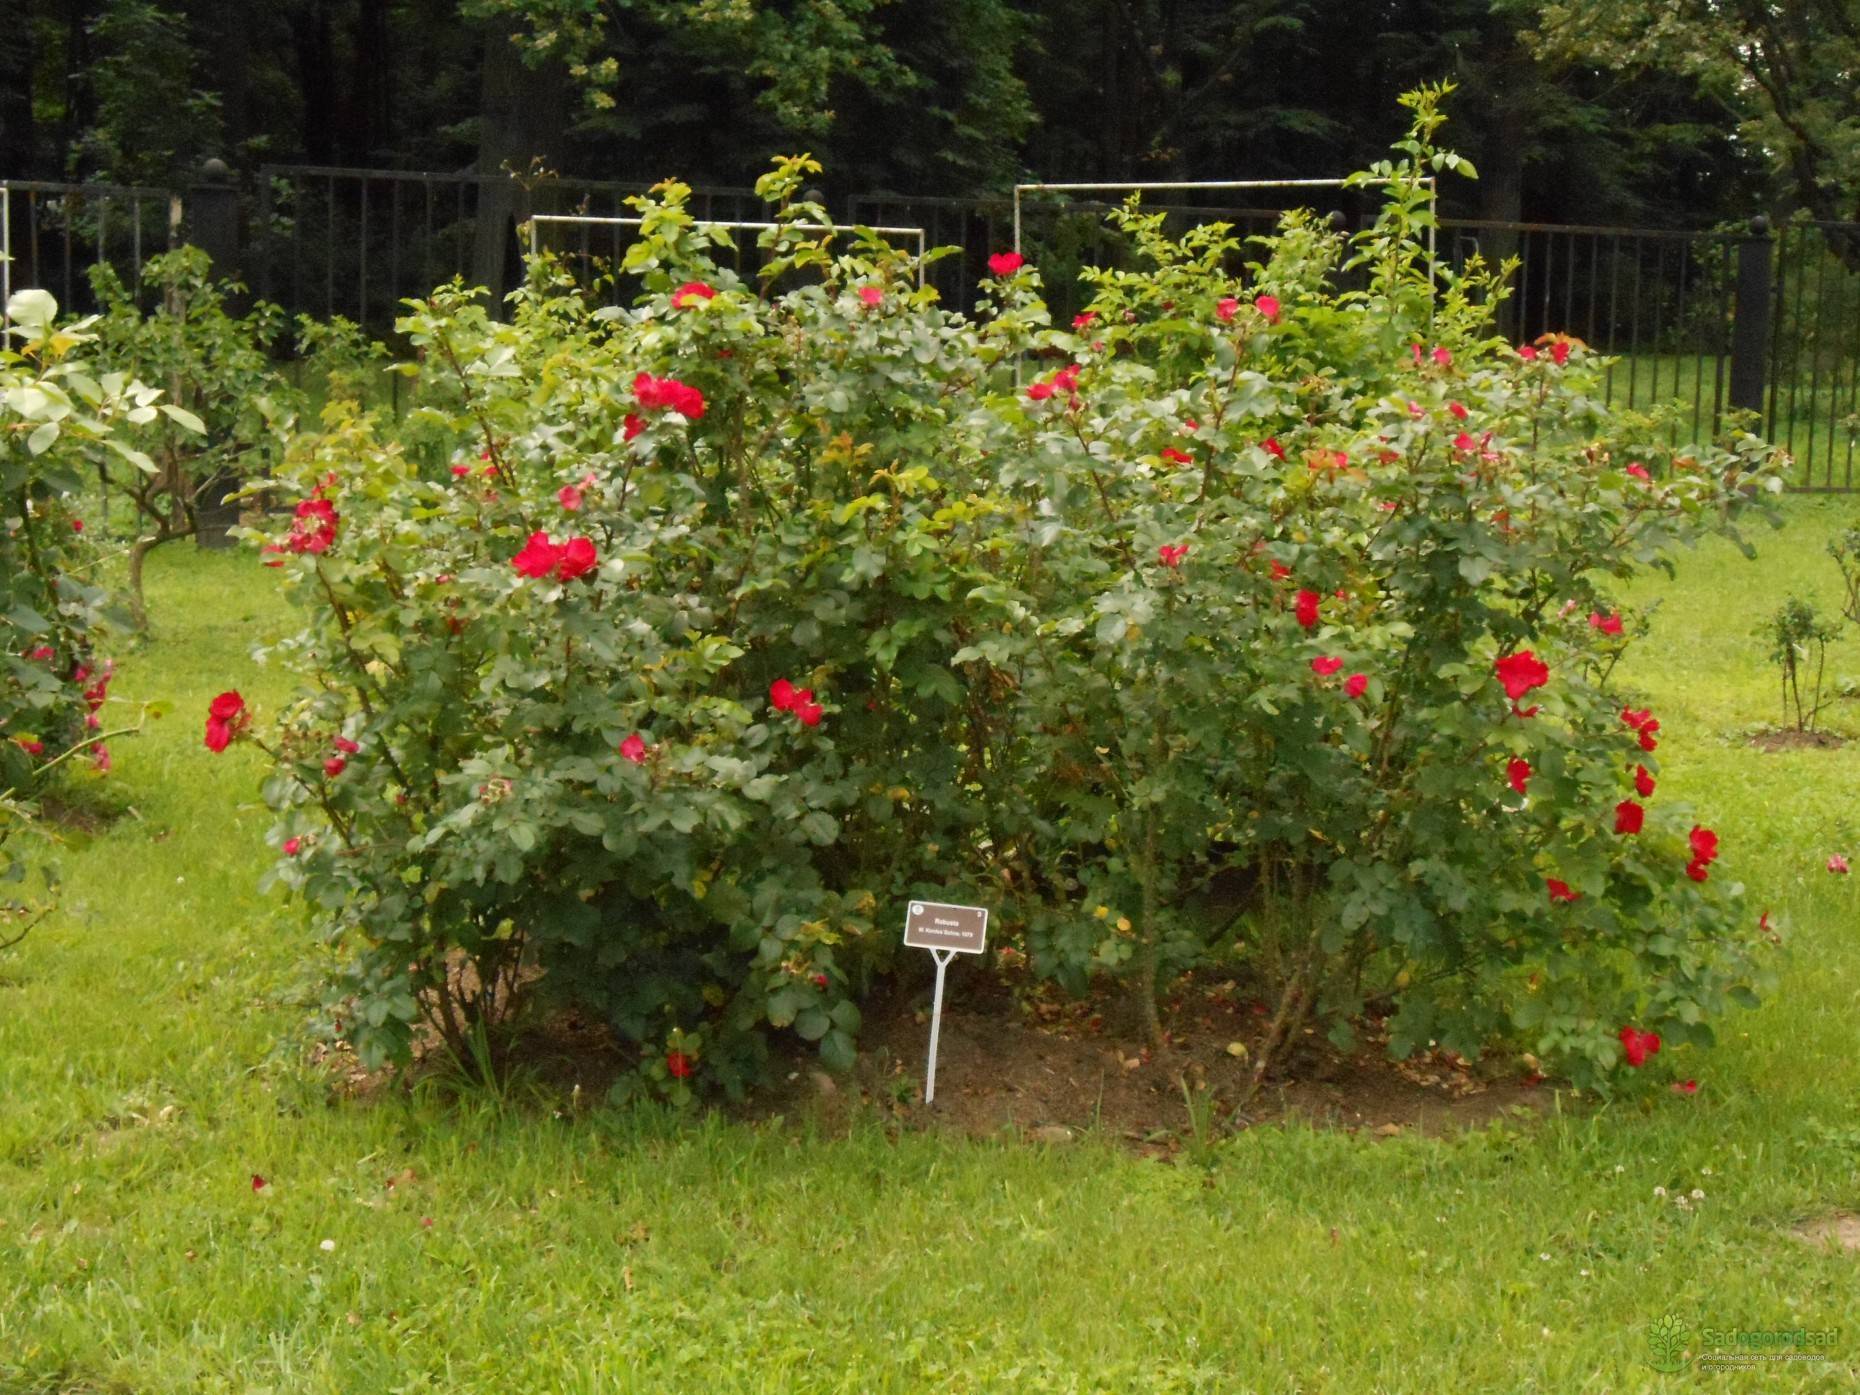 Цветок парковая роза: описание растения, известные сорта, правила посадки и выращивания